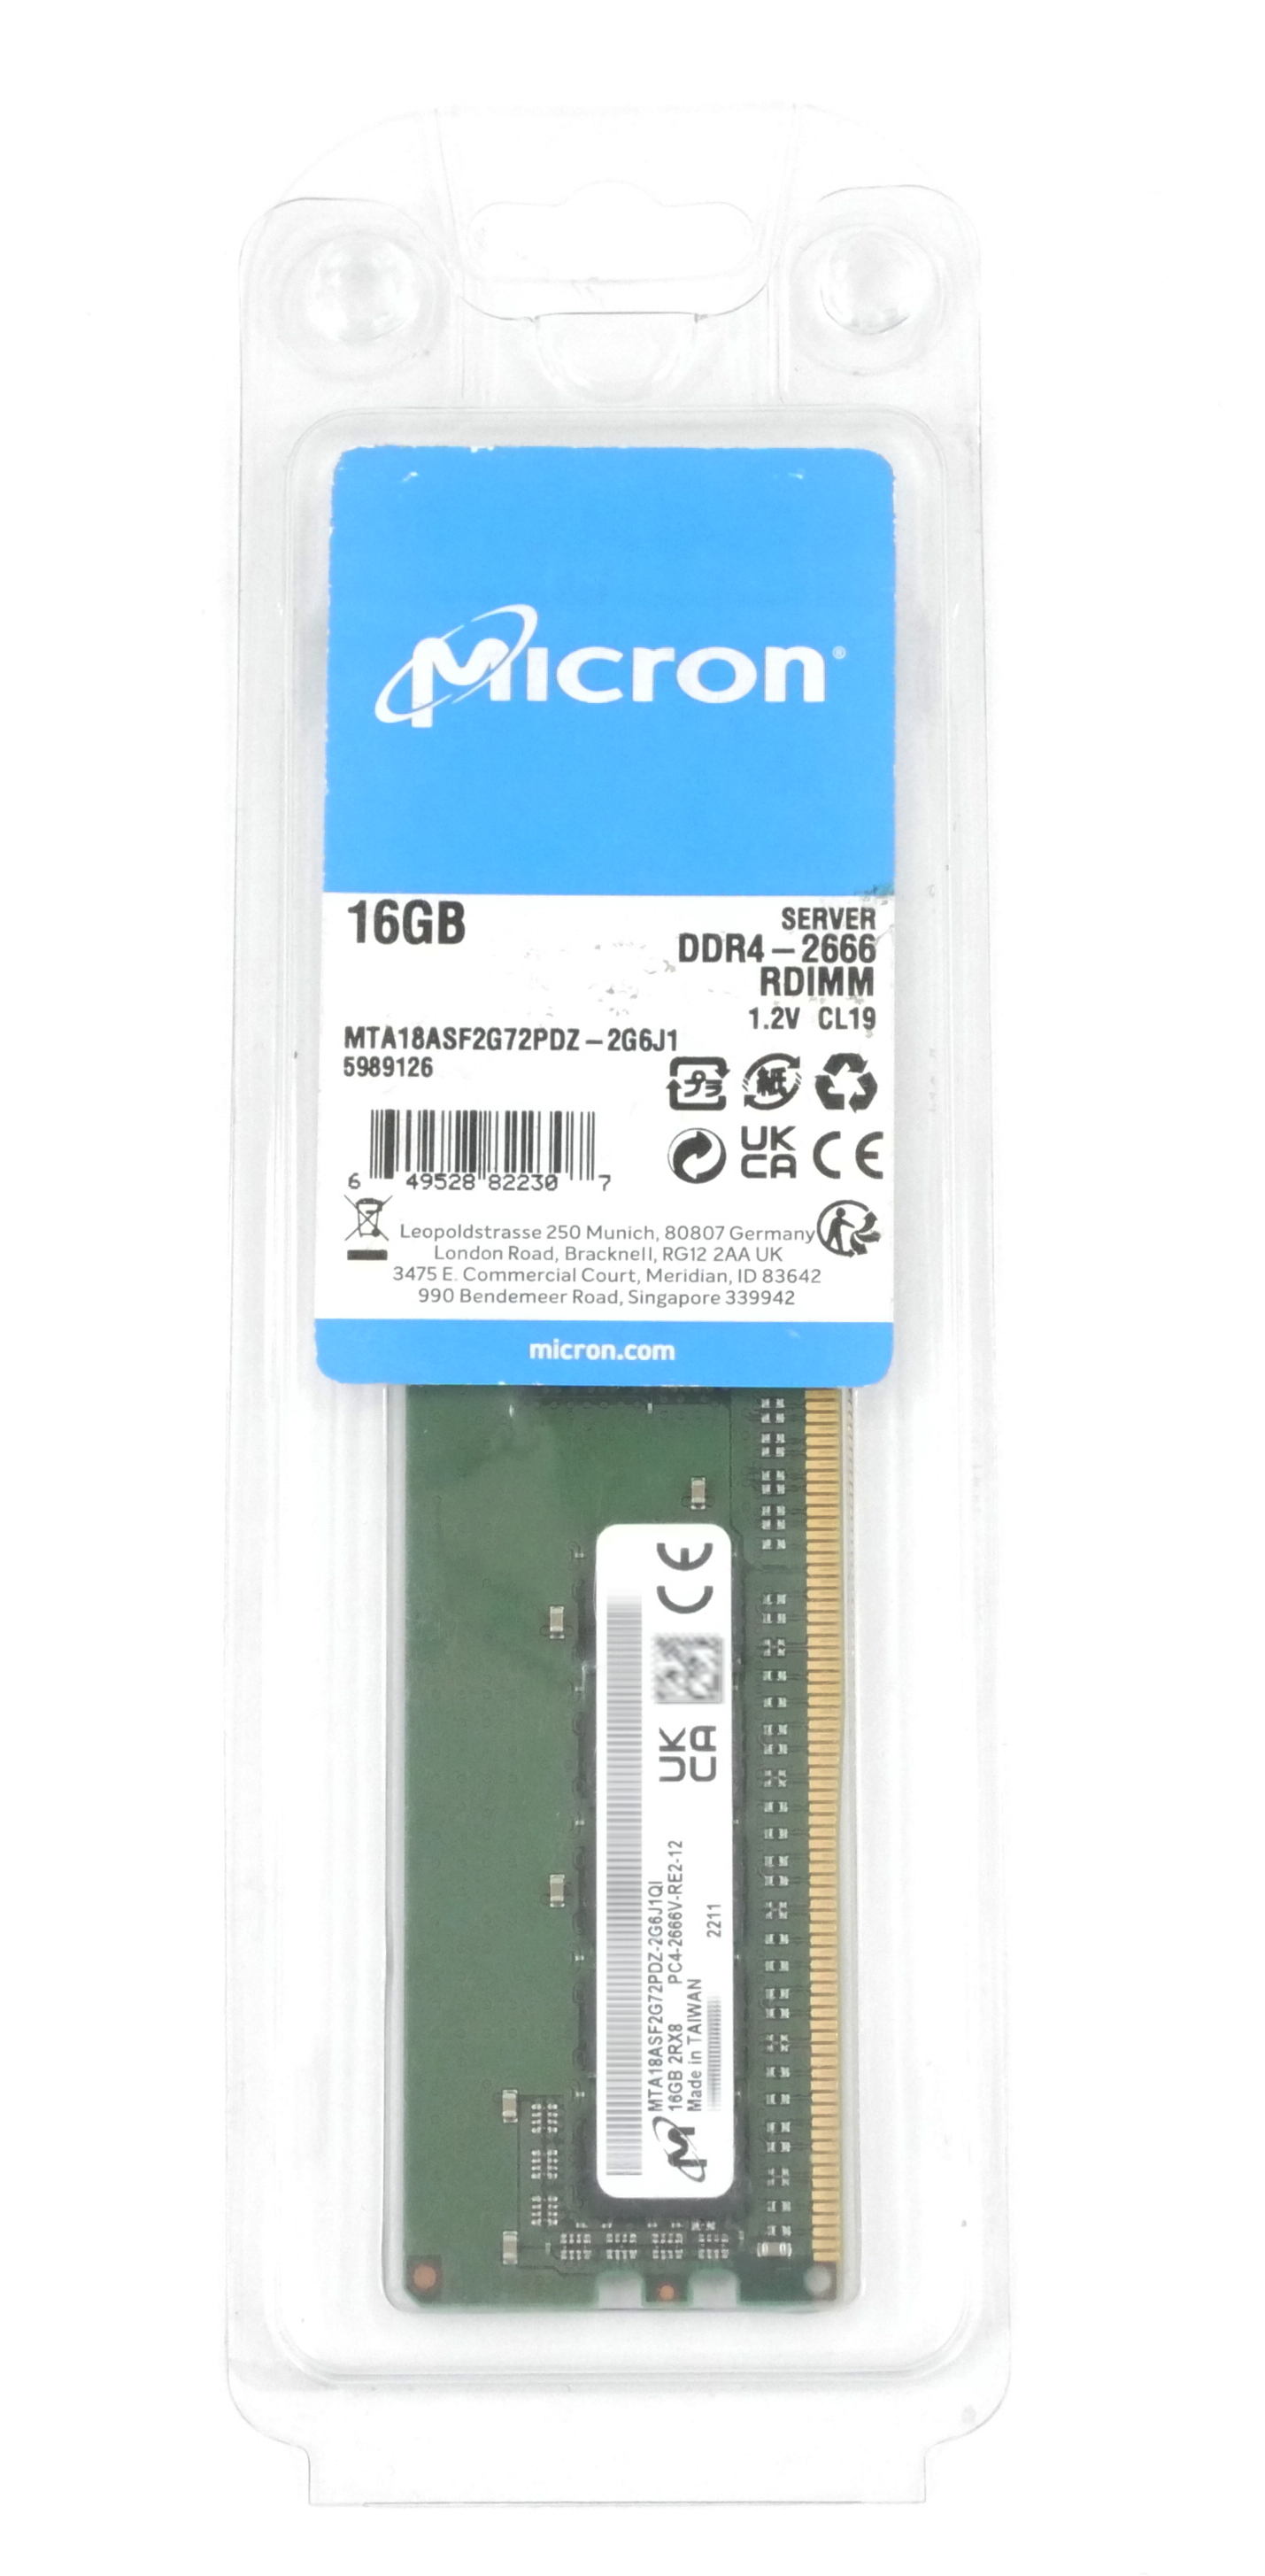 Micron 16GB MTA18ASF2G72PDZ-2G6J1 PC4-2666V ECC DDR4 1.2V RDIMM Server Memory